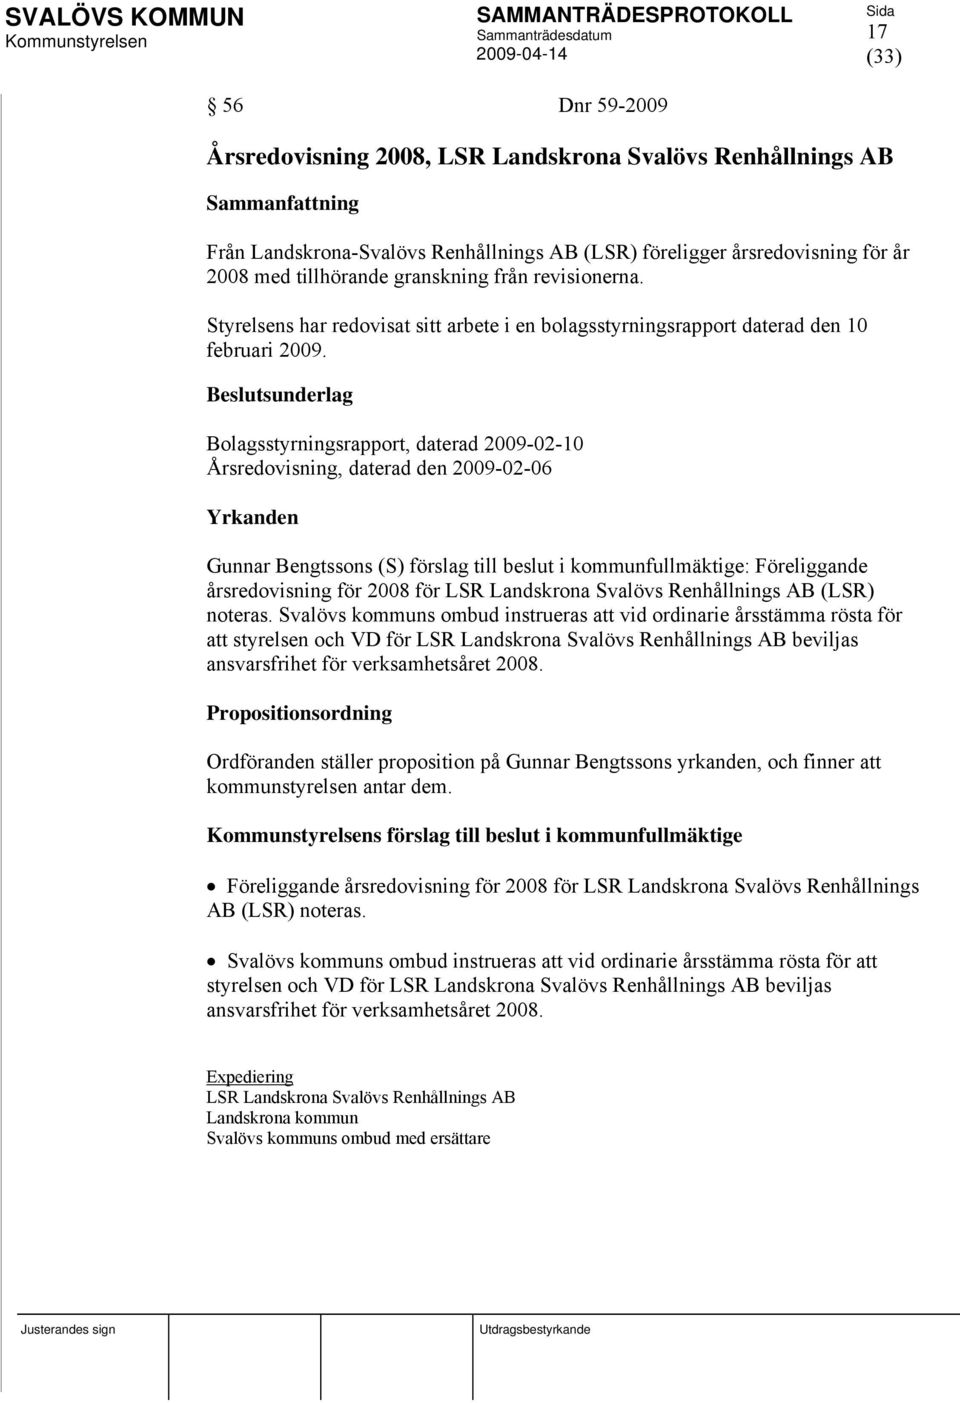 Bolagsstyrningsrapport, daterad 2009-02-10 Årsredovisning, daterad den 2009-02-06 Yrkanden Gunnar Bengtssons (S) förslag till beslut i kommunfullmäktige: Föreliggande årsredovisning för 2008 för LSR